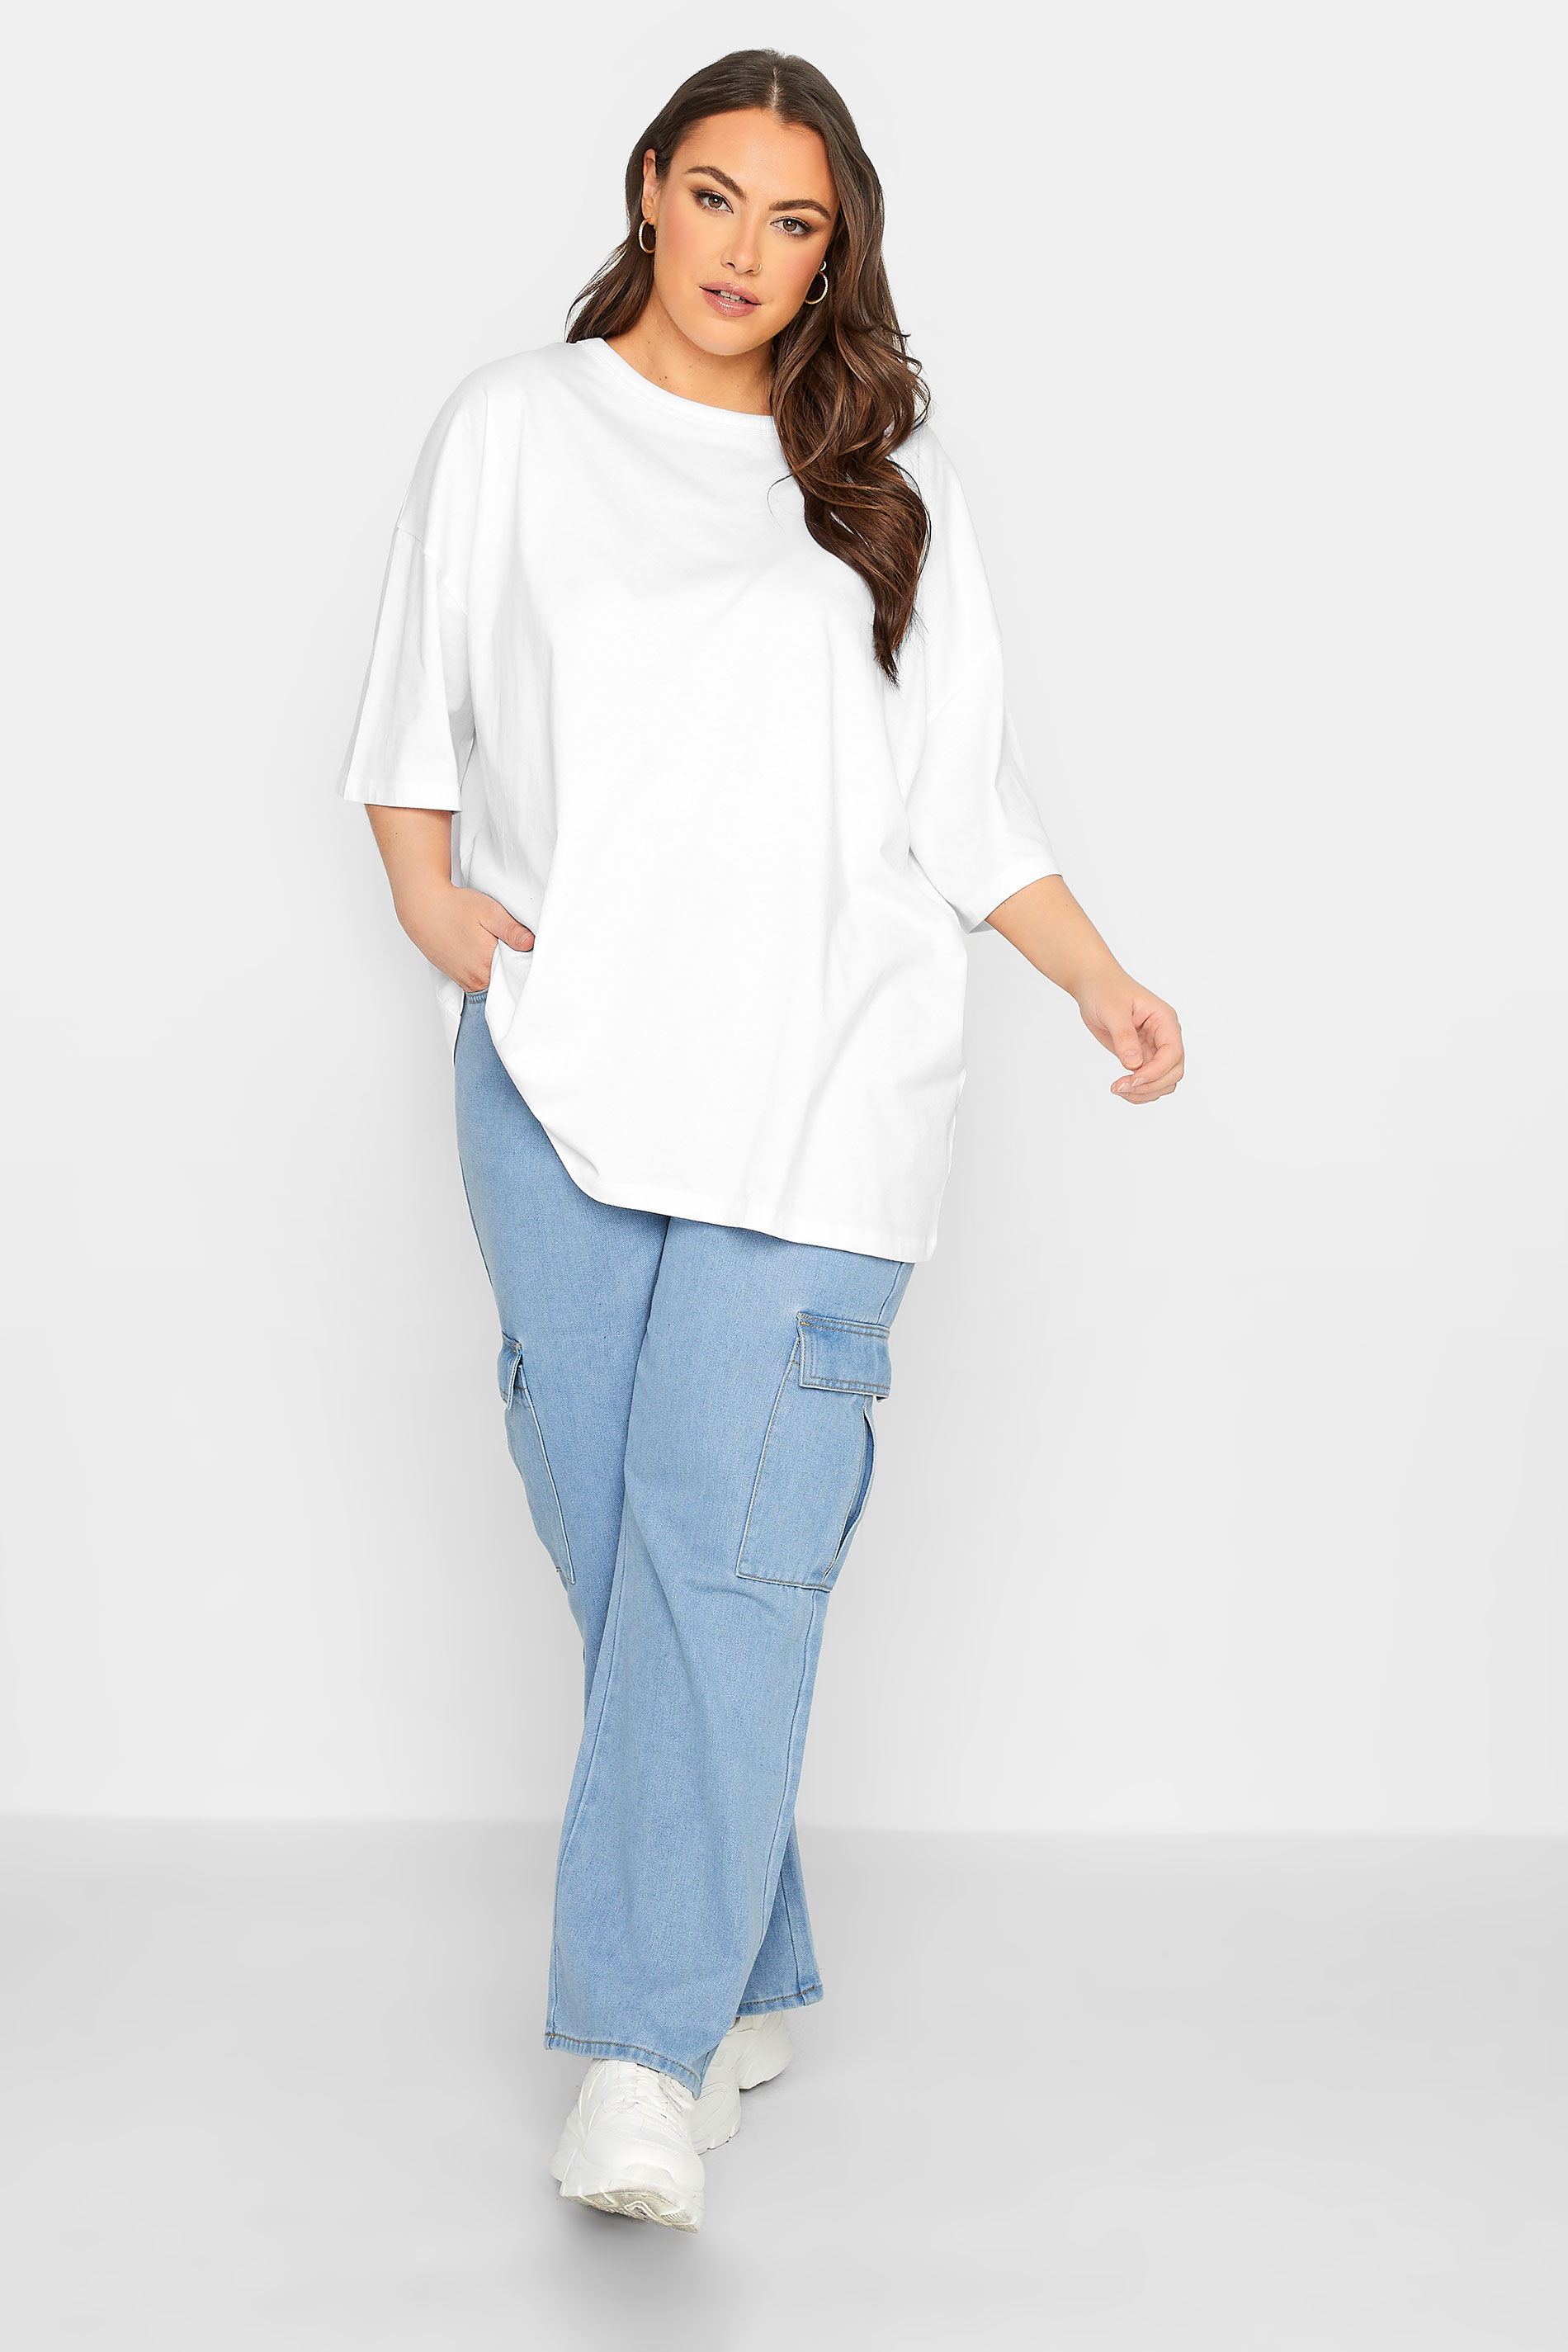 YOURS Plus Size White Oversized Boxy T-Shirt | Yours Clothing 2